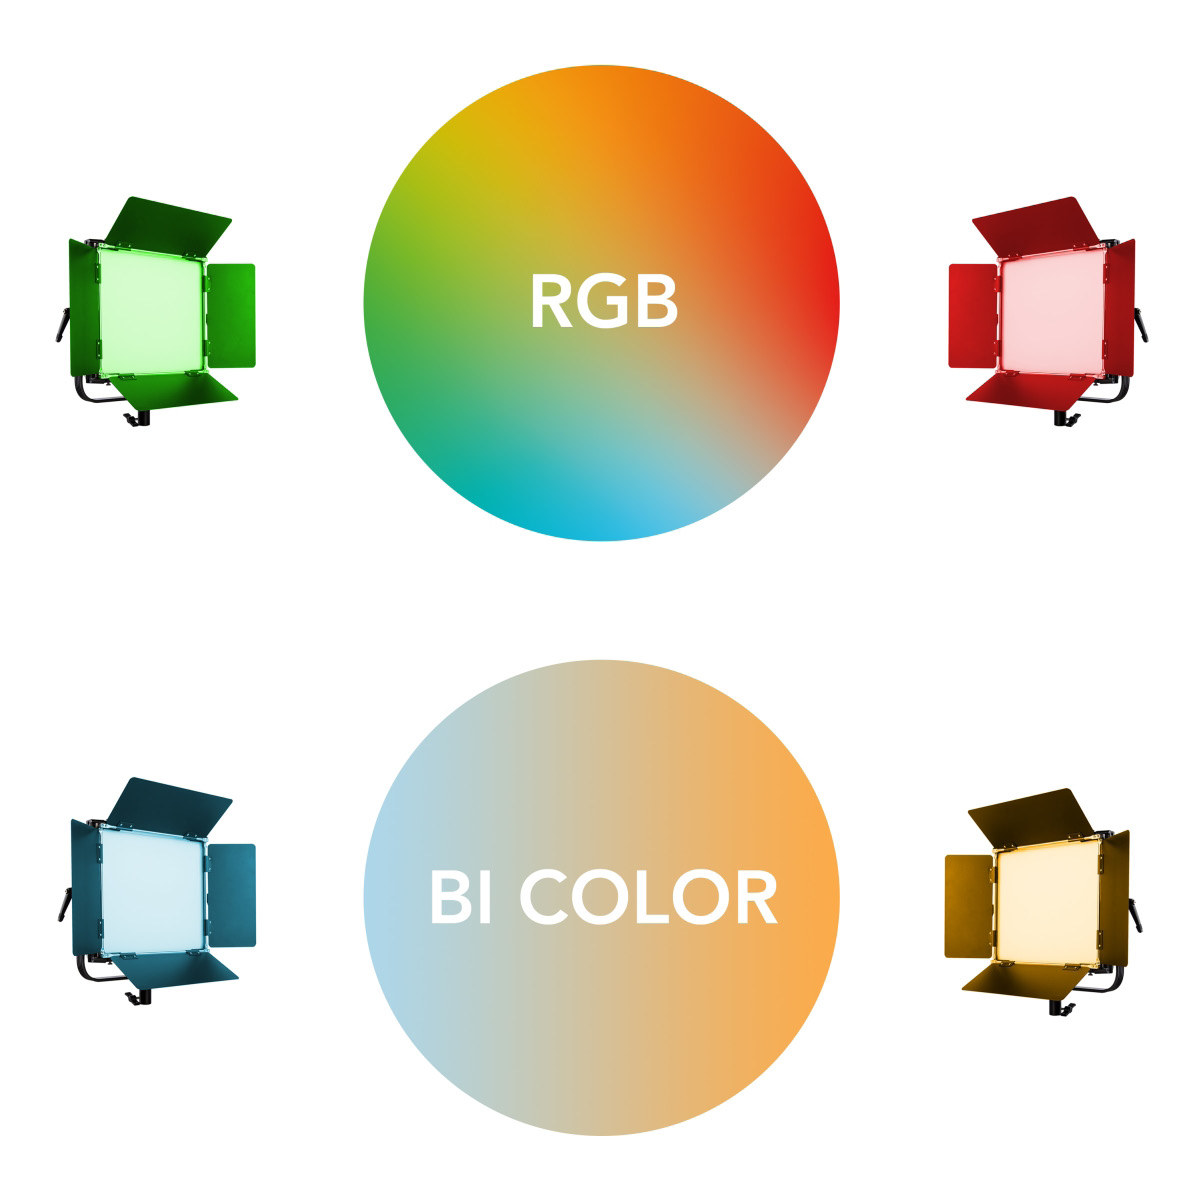 Walimex pro LED Rainbow 100W RGBWW Set 4